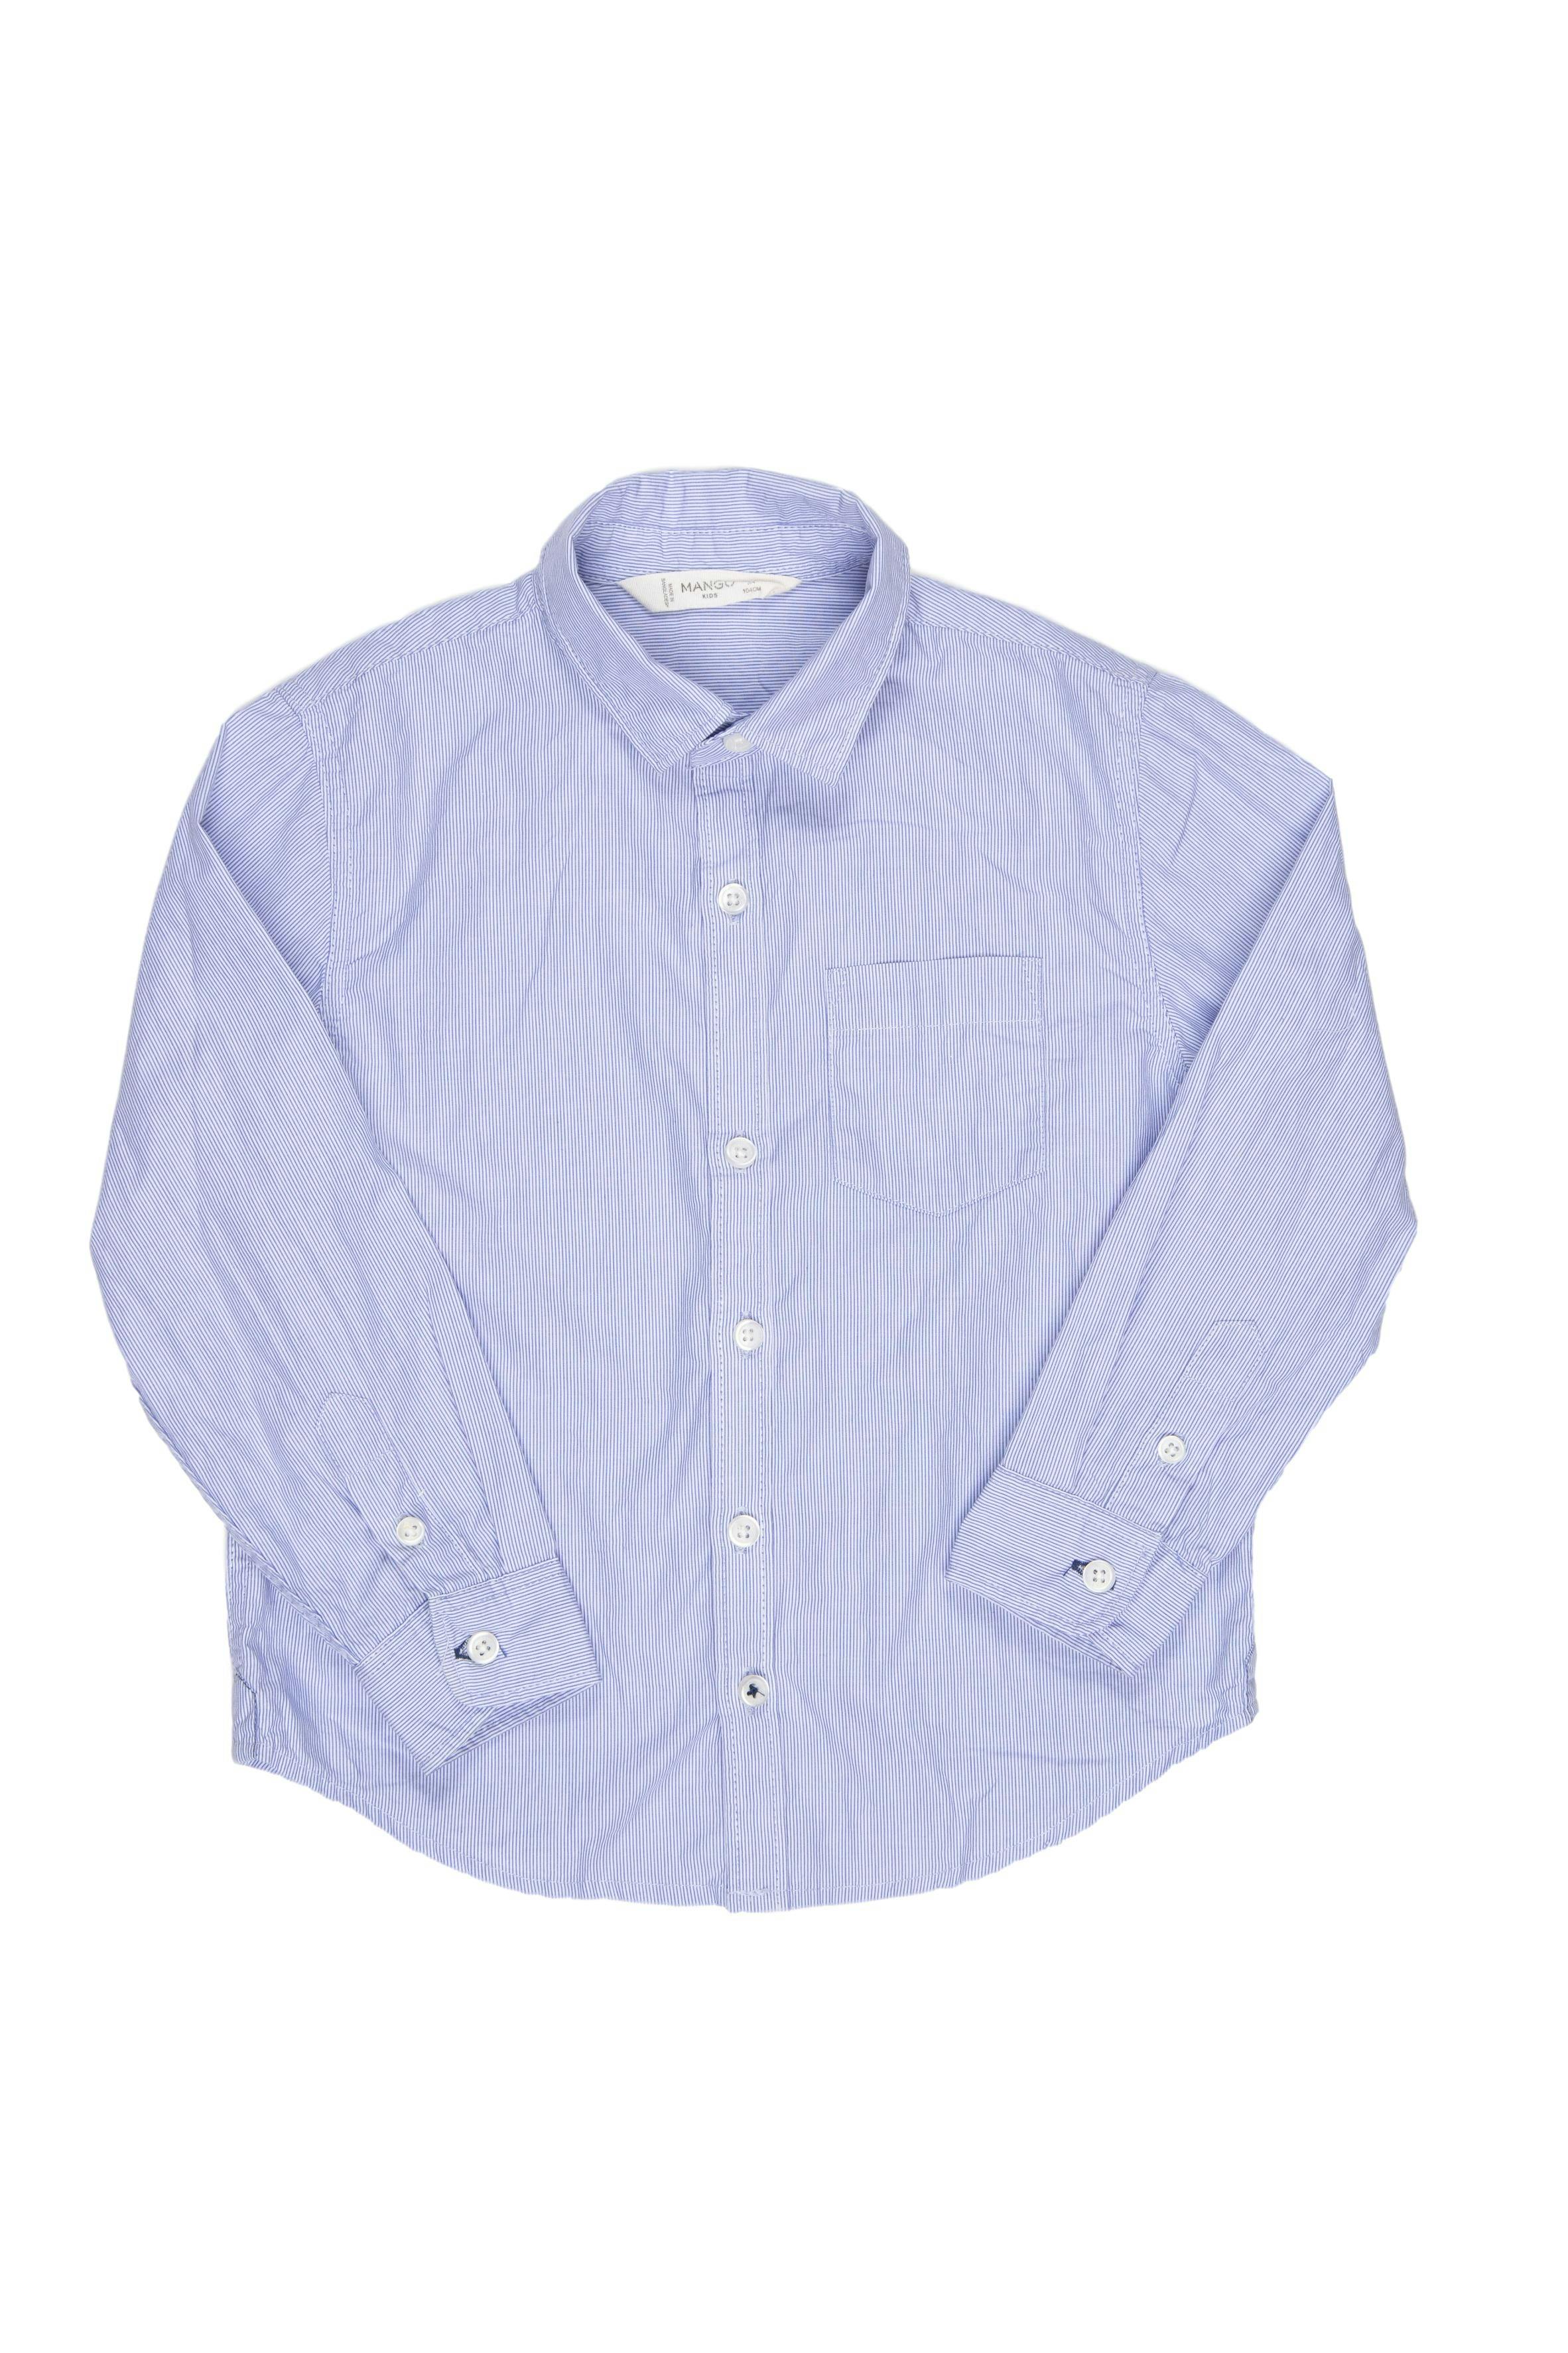 Camisa de rayas delgaditas azules en fondo blanco, una sola puesta. Talla en etiqueta: 3 - 4 años. 100% algodón - Mango